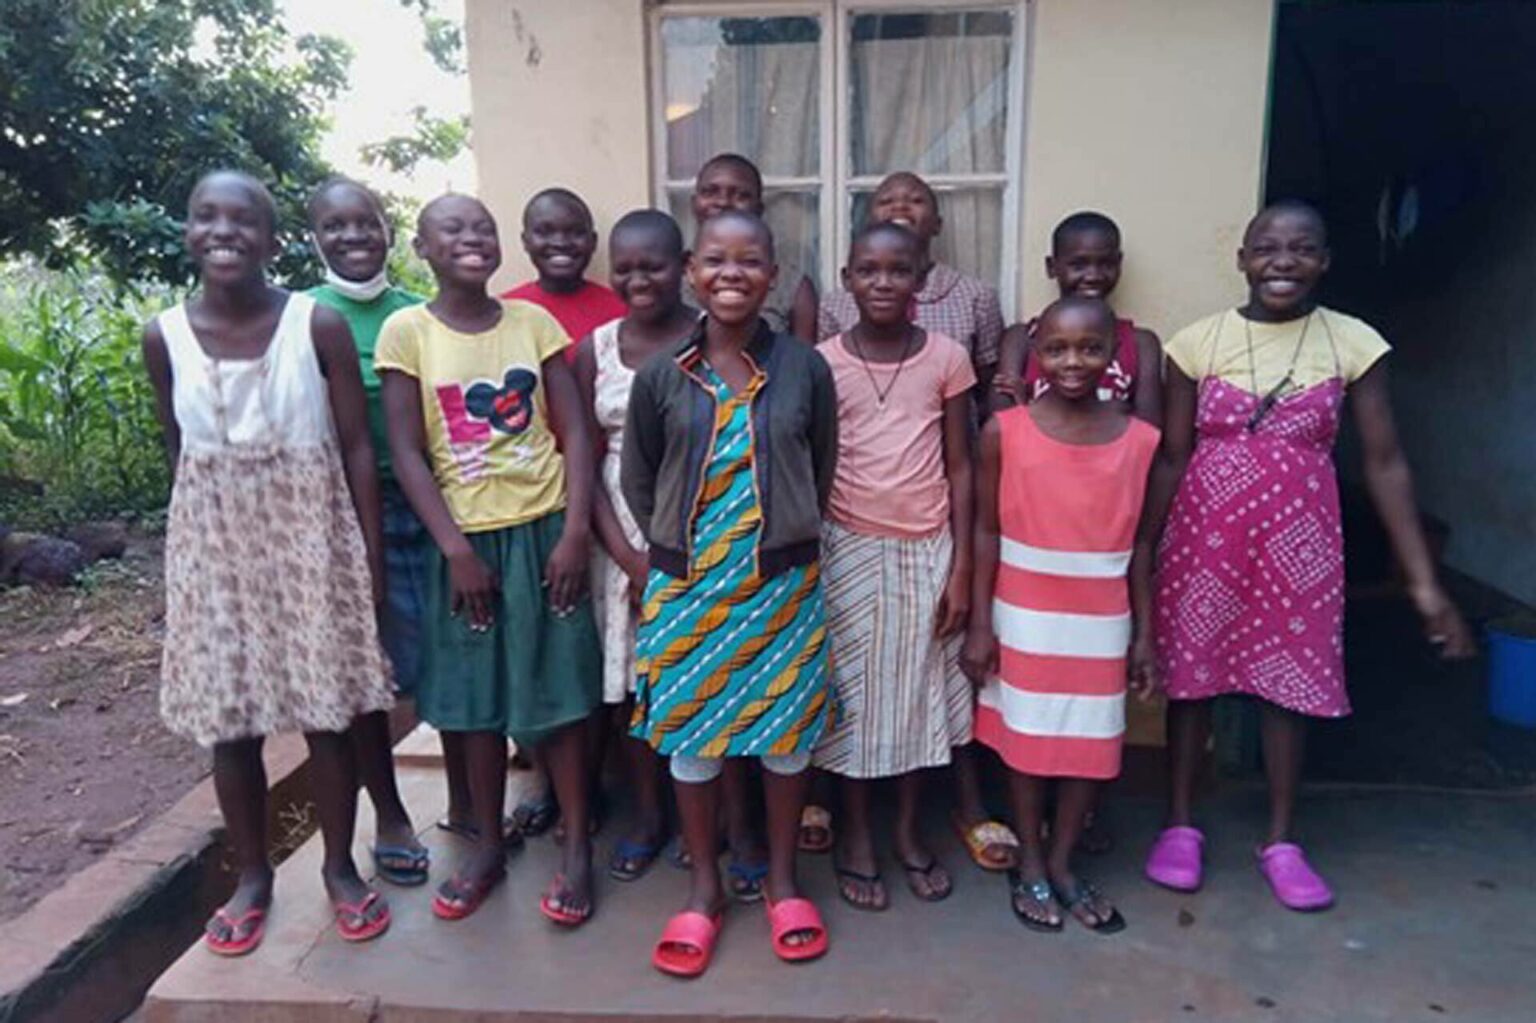 A safe home for children in Uganda